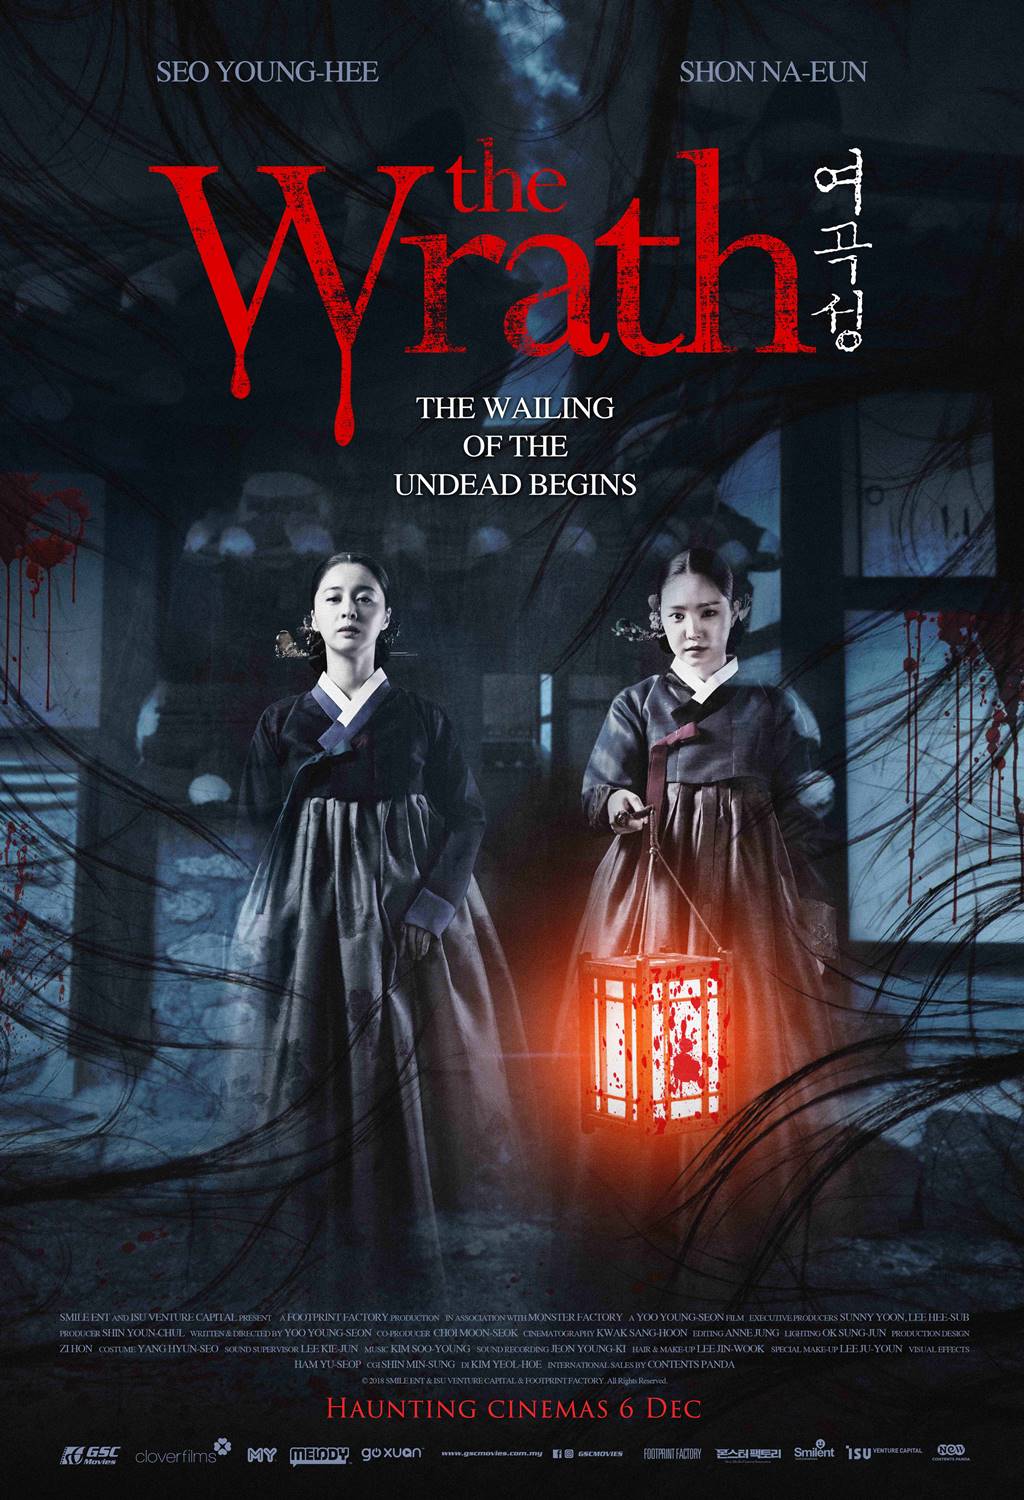 Poster phim ma kinh dị Hàn Quốc The Wrath - Nàng dâu bị nguyền